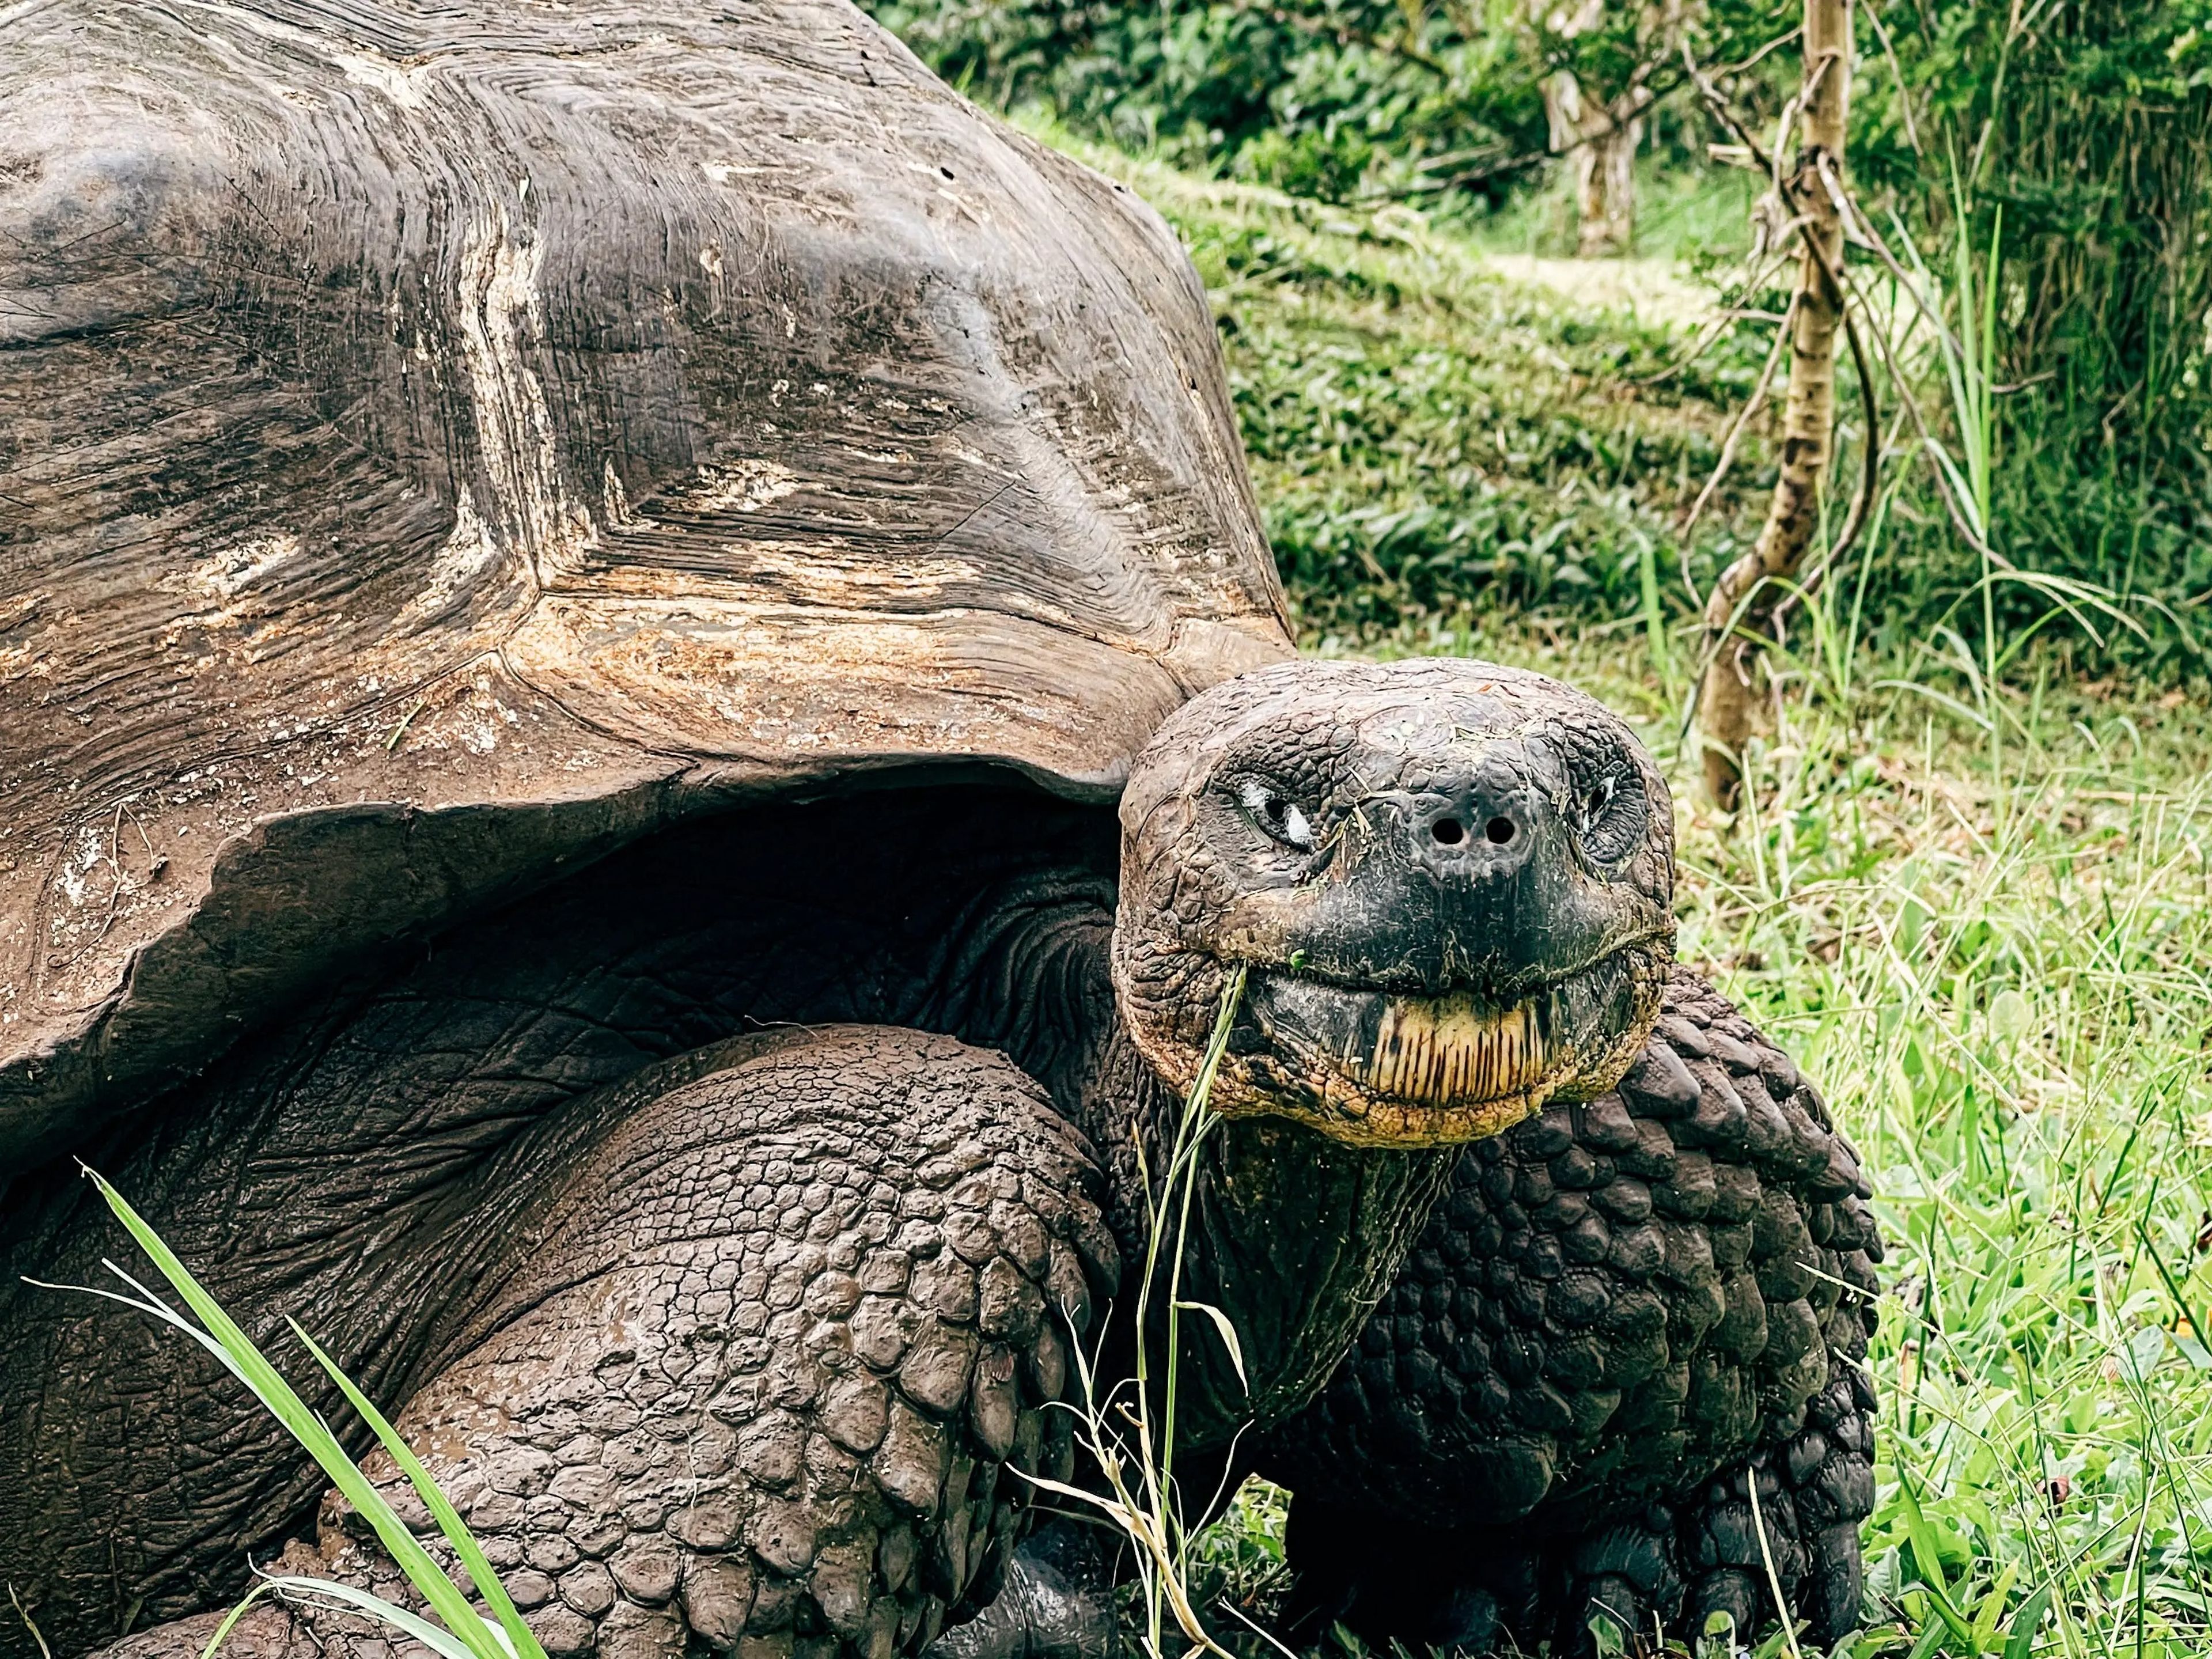 Una tortuga gigante en las Islas Galápagos.